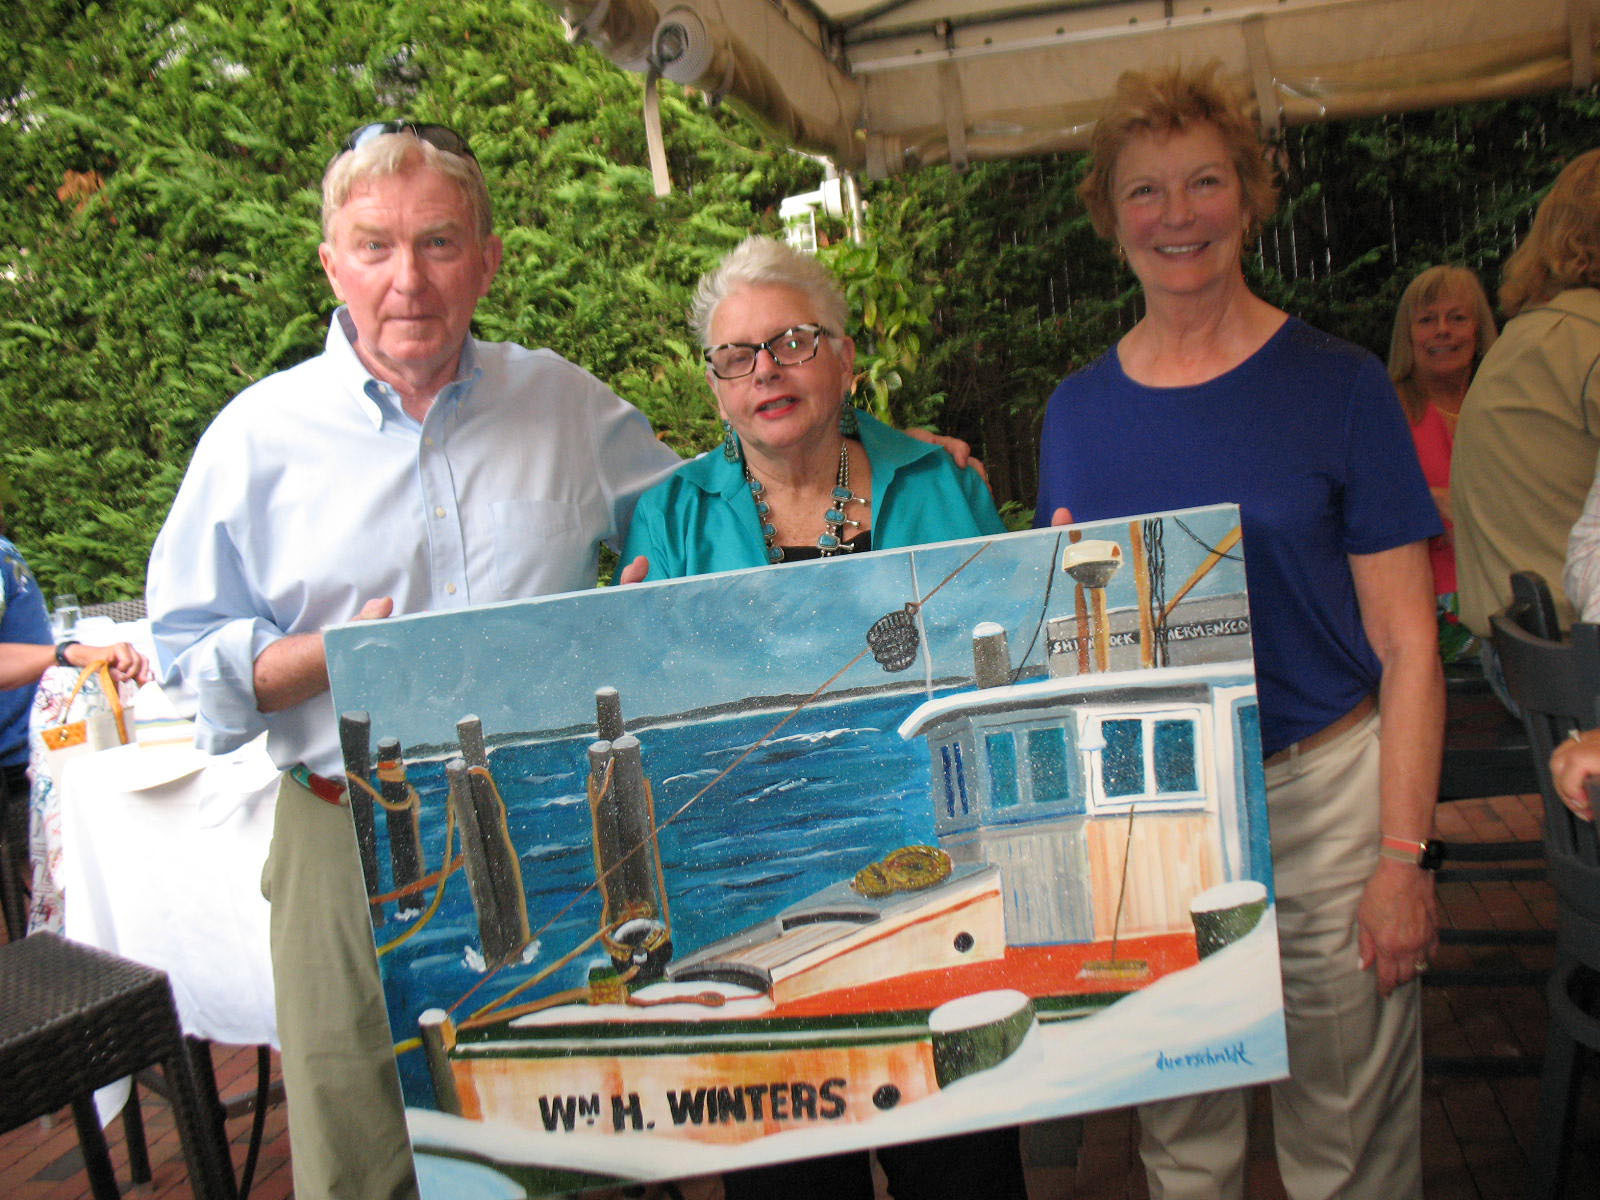 Live auction winners Michael O’Neill and Gail O’Neill with artist Liz Duerschmiet, center,  at 